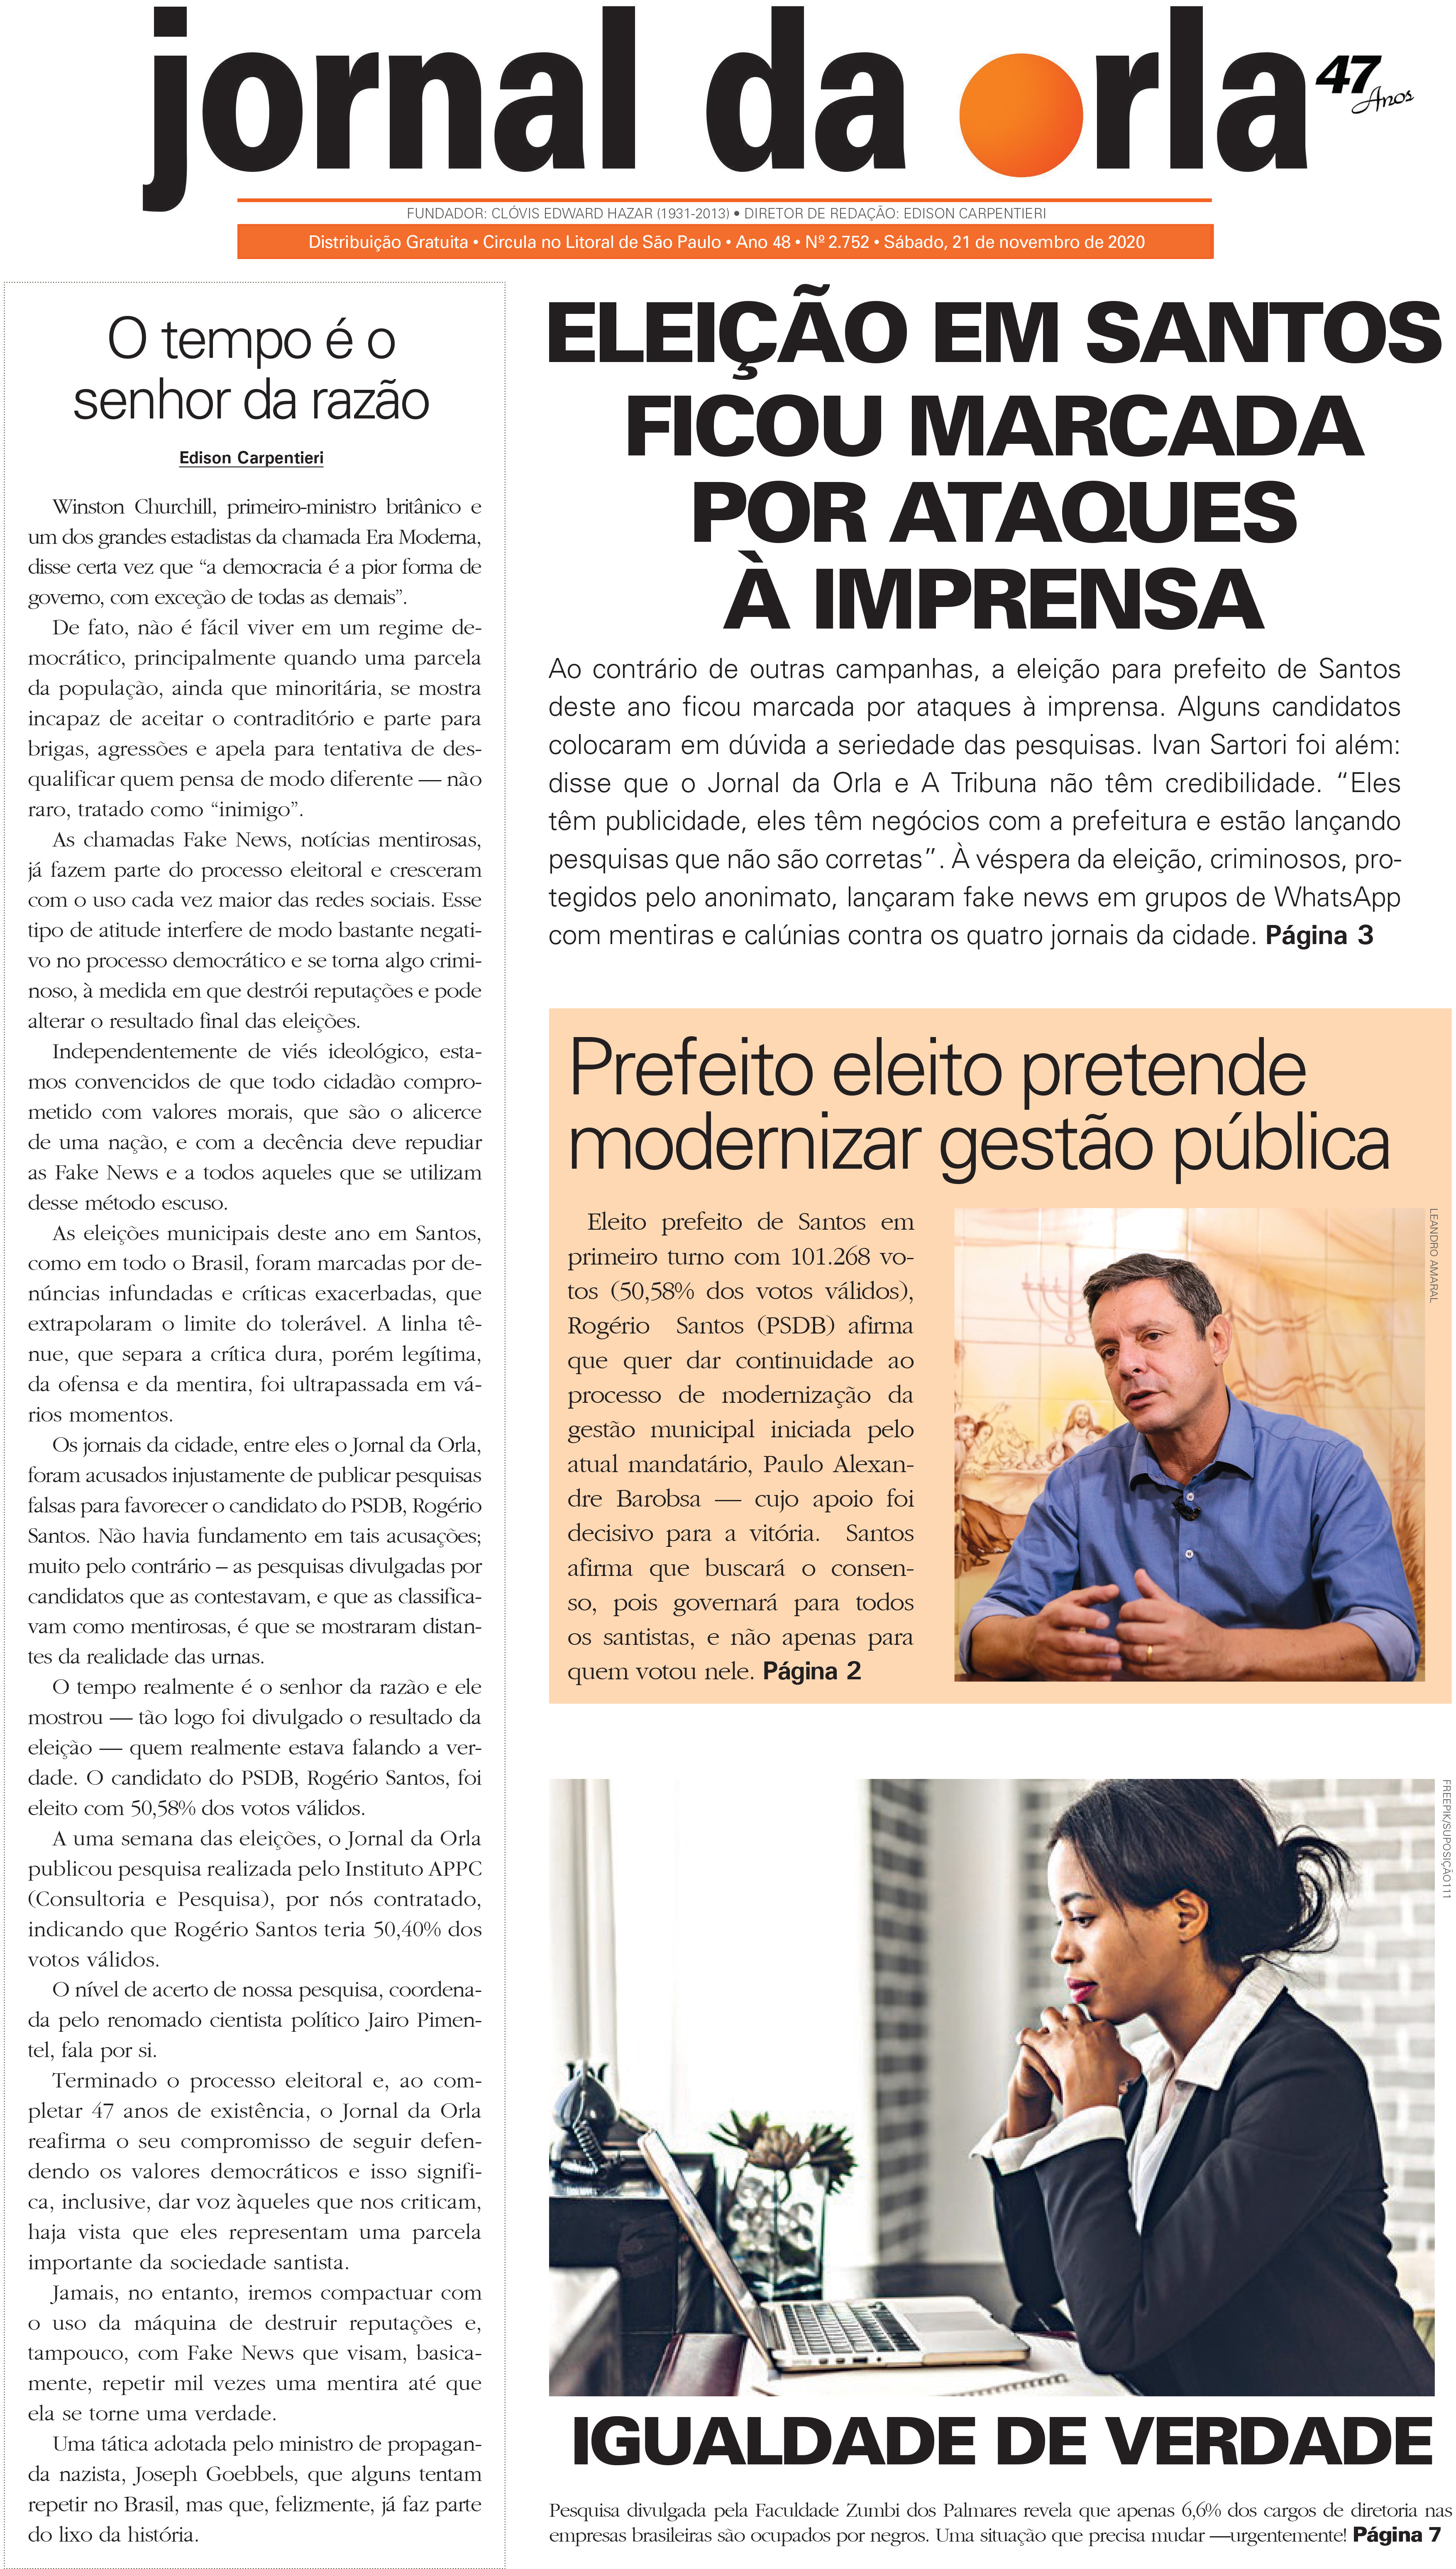 21/11/2020 | Jornal da Orla